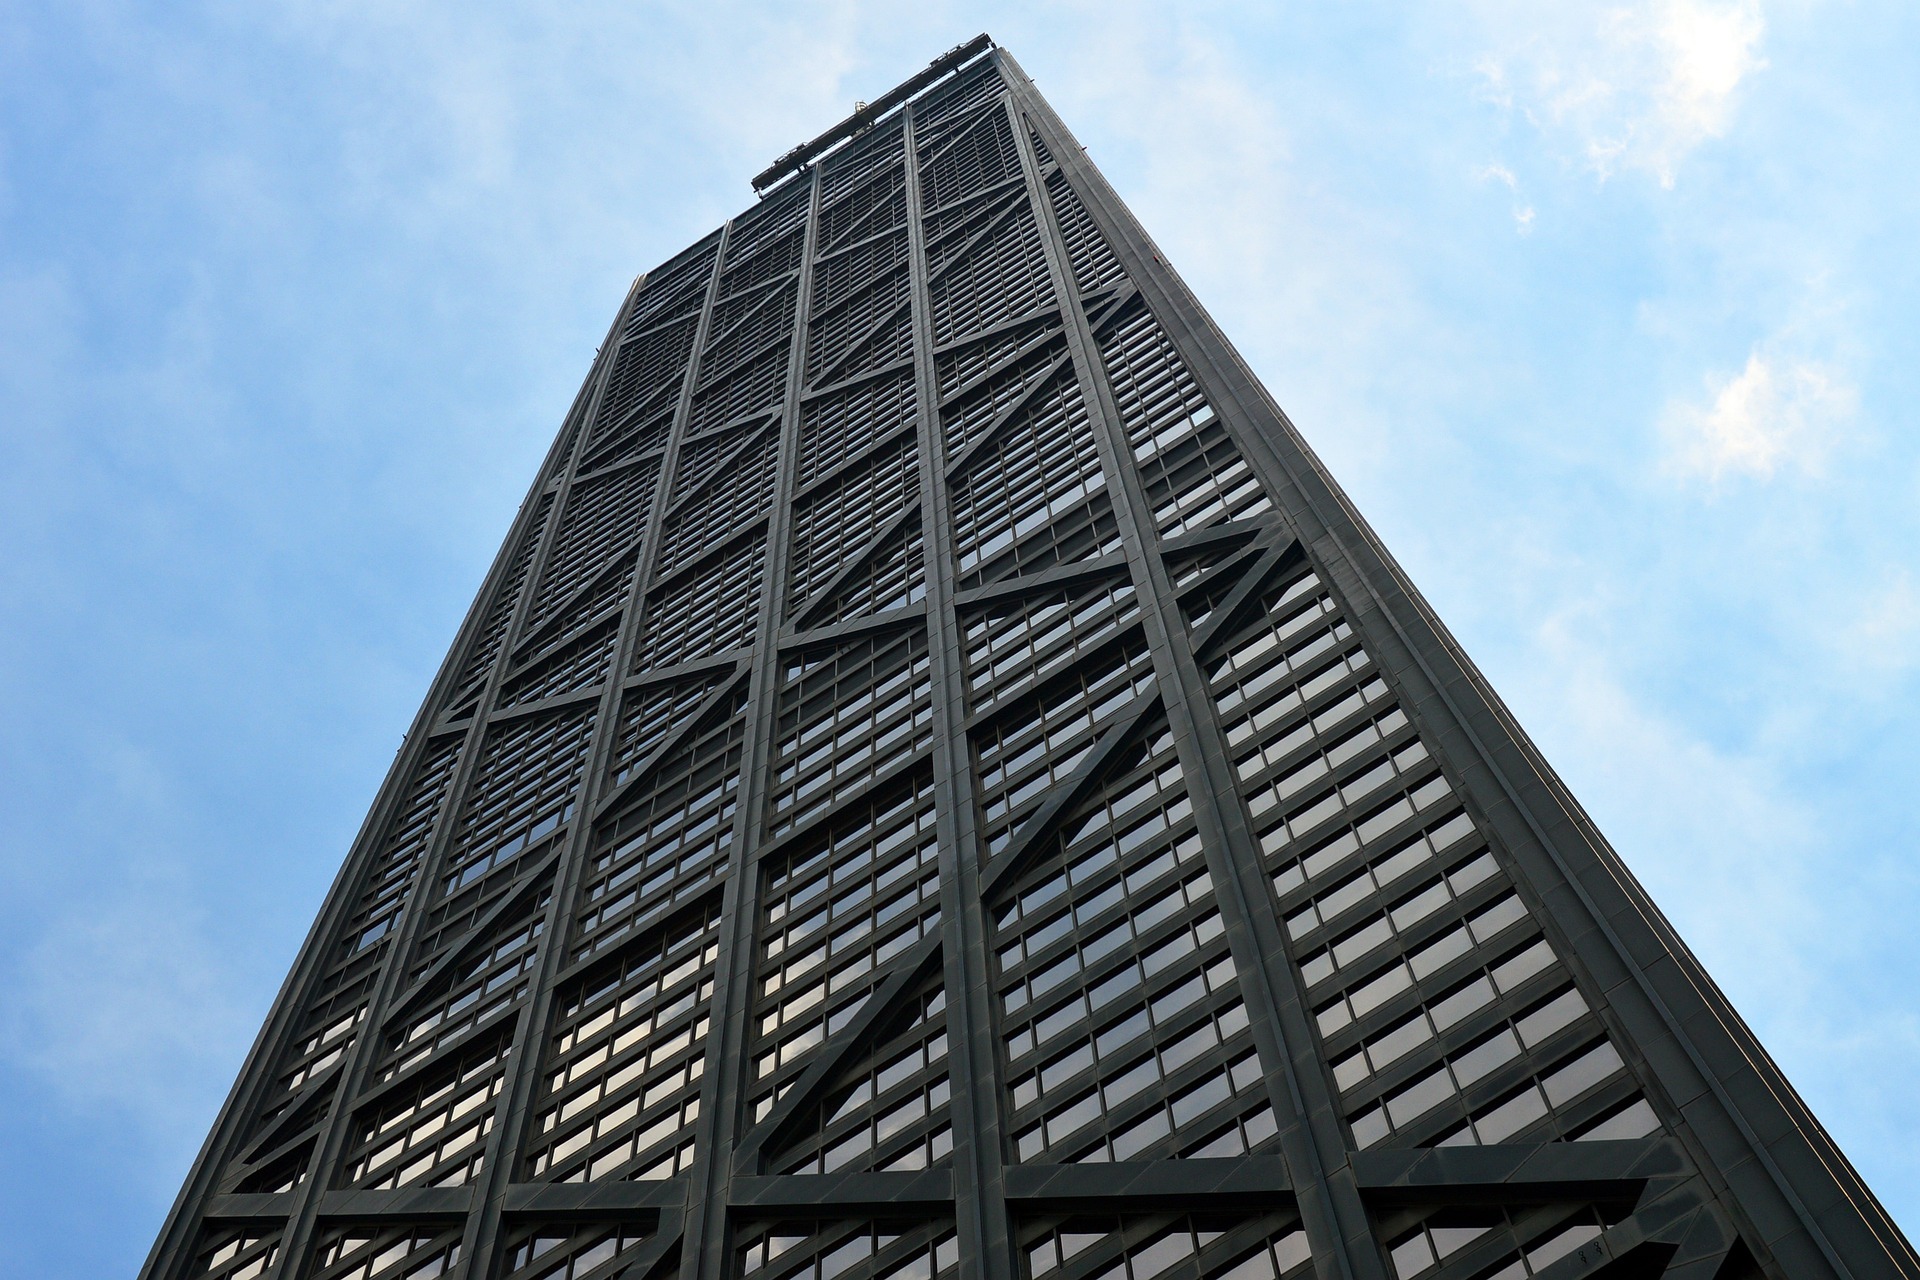 Stahl und Glas: Das John Hancock Center in Chicago gilt als frühes Bauwerk der High-Tech-Architektur.